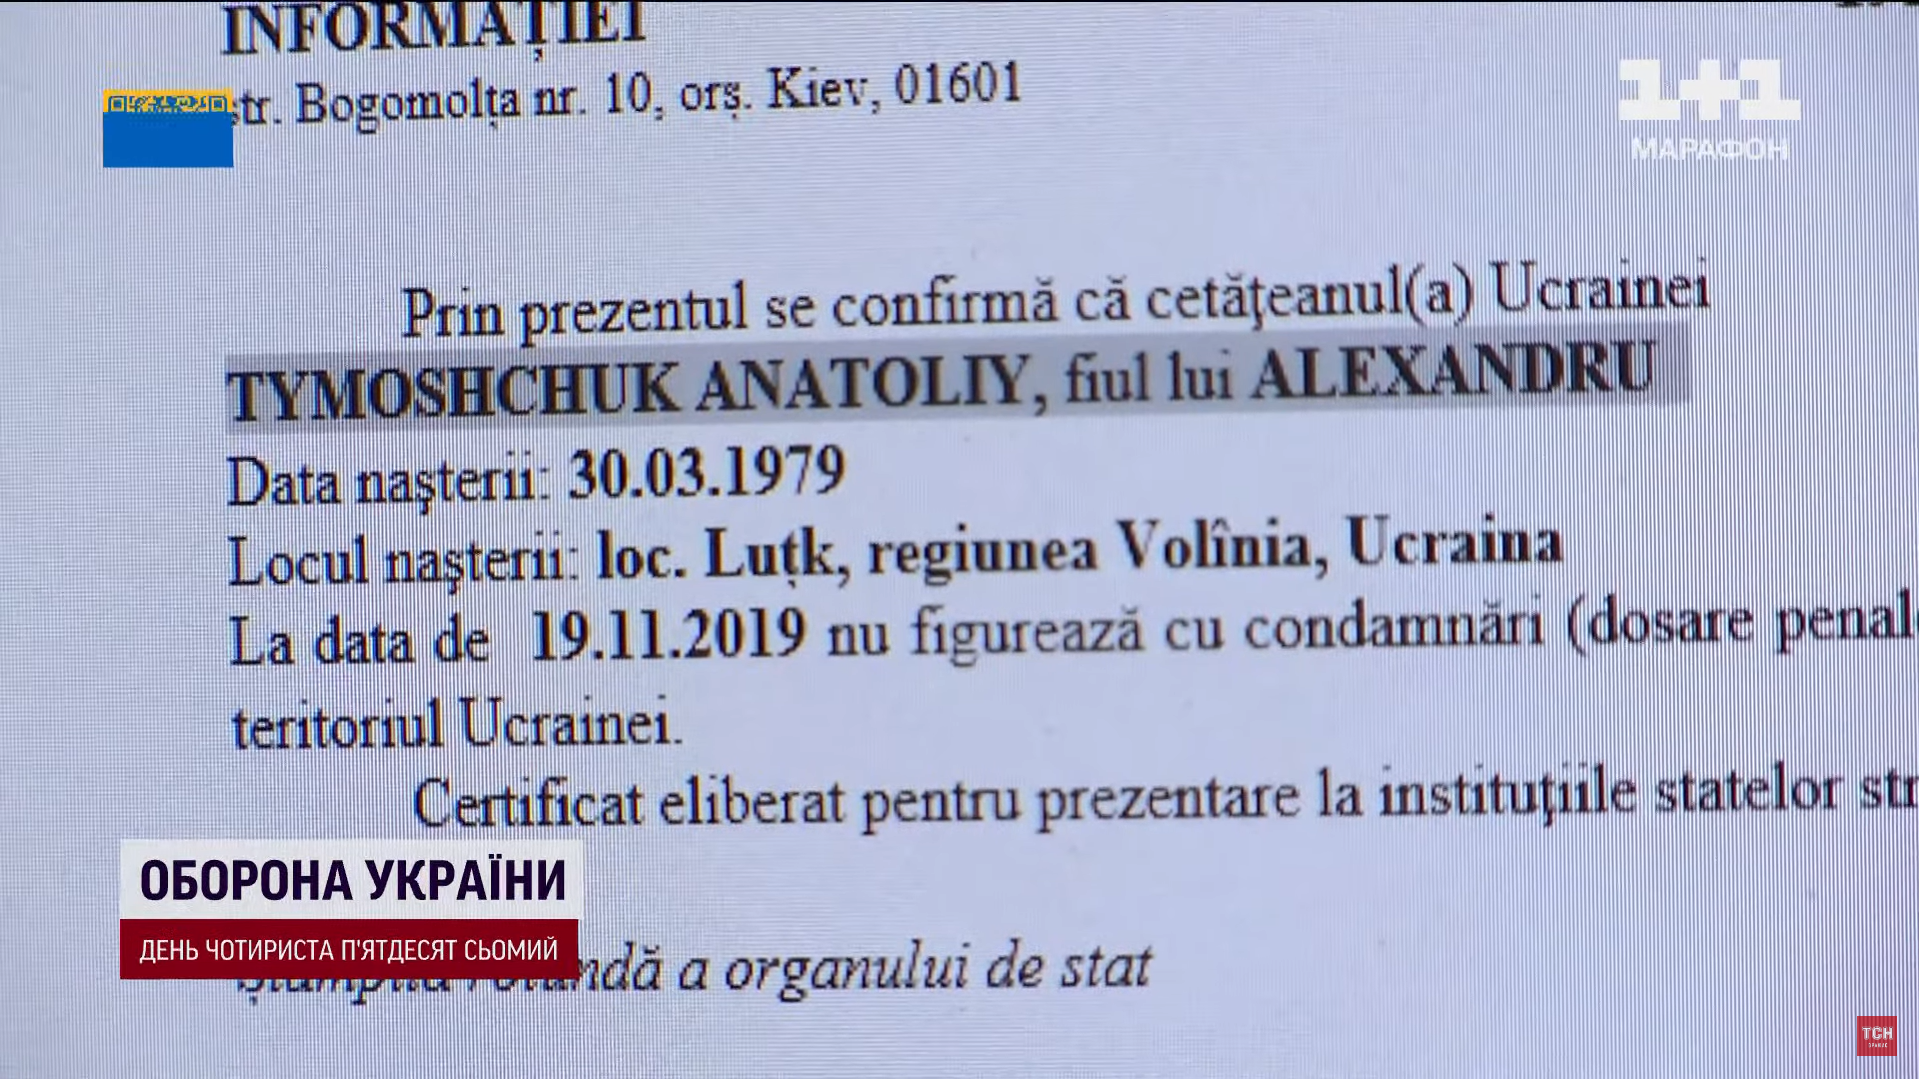 Тимощук решил обмануть Украину и стать гражданином Румынии, подав поддельные документы – СМИ